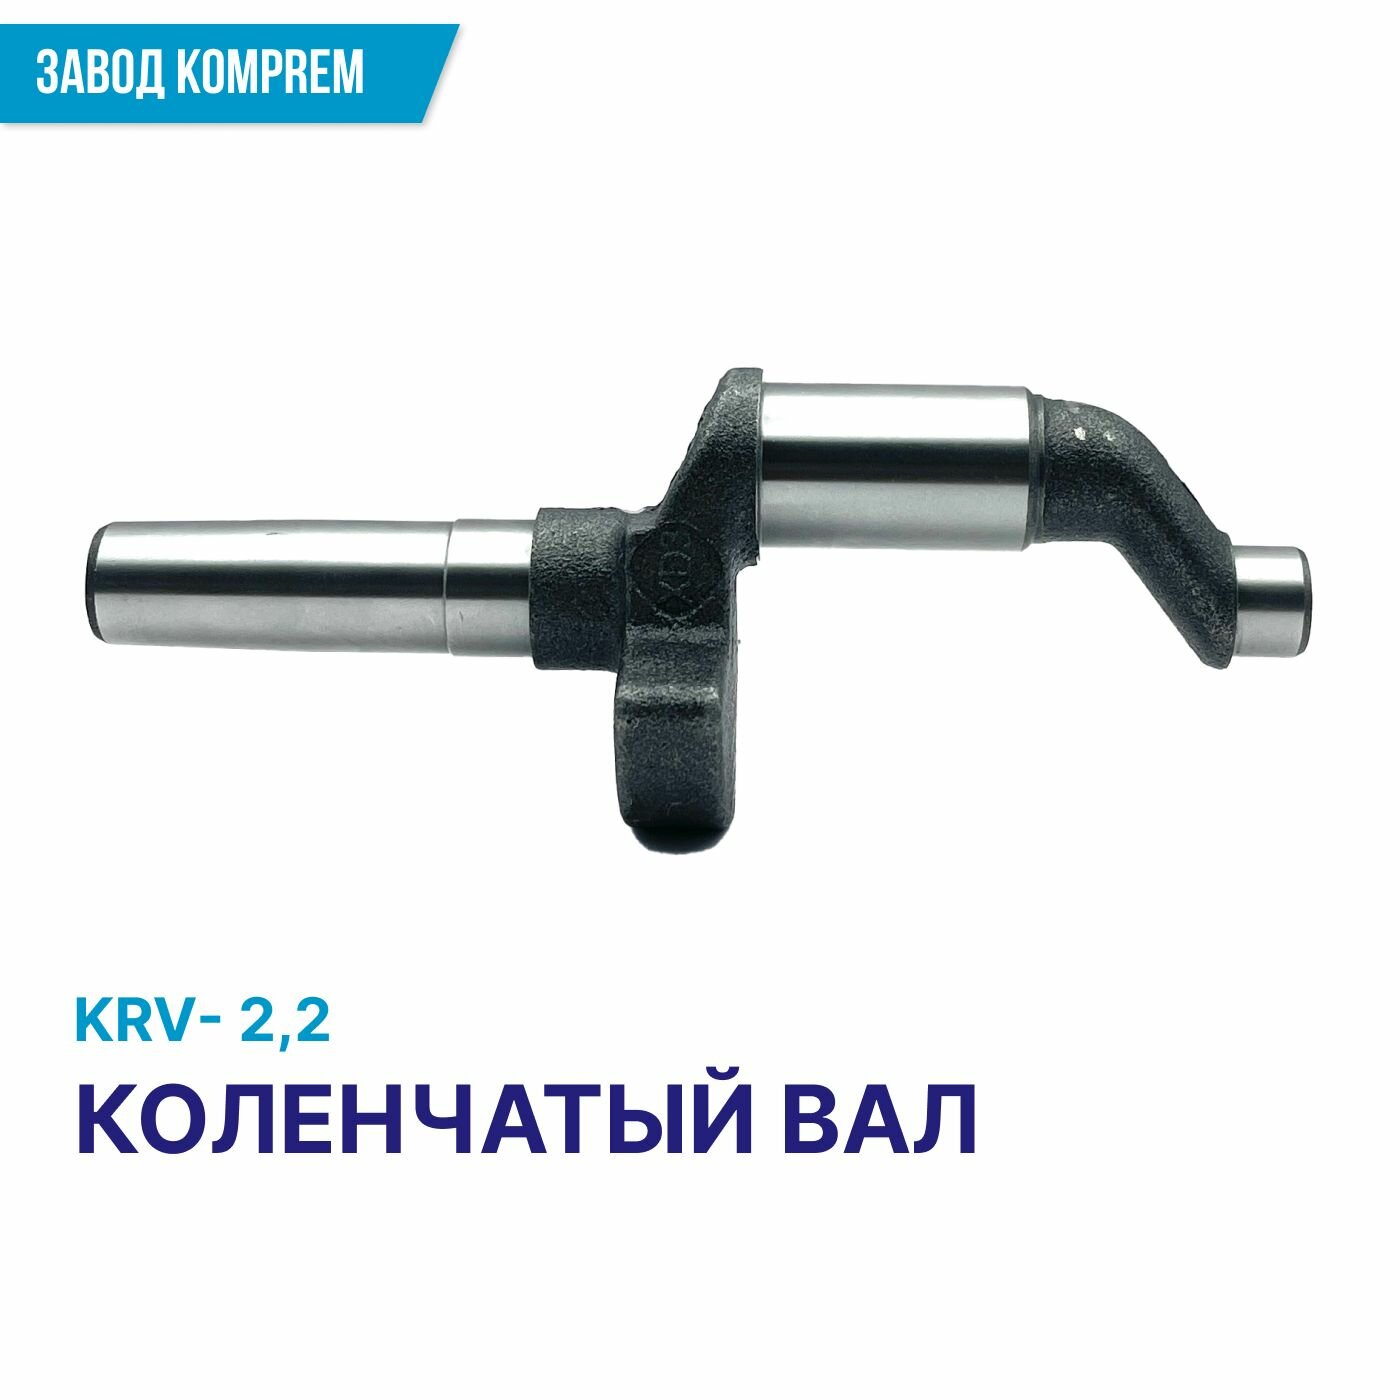 Коленвал для воздушного компрессора (коленчатый вал) KRV22 запчасти для электроинструмента чугун Komprem